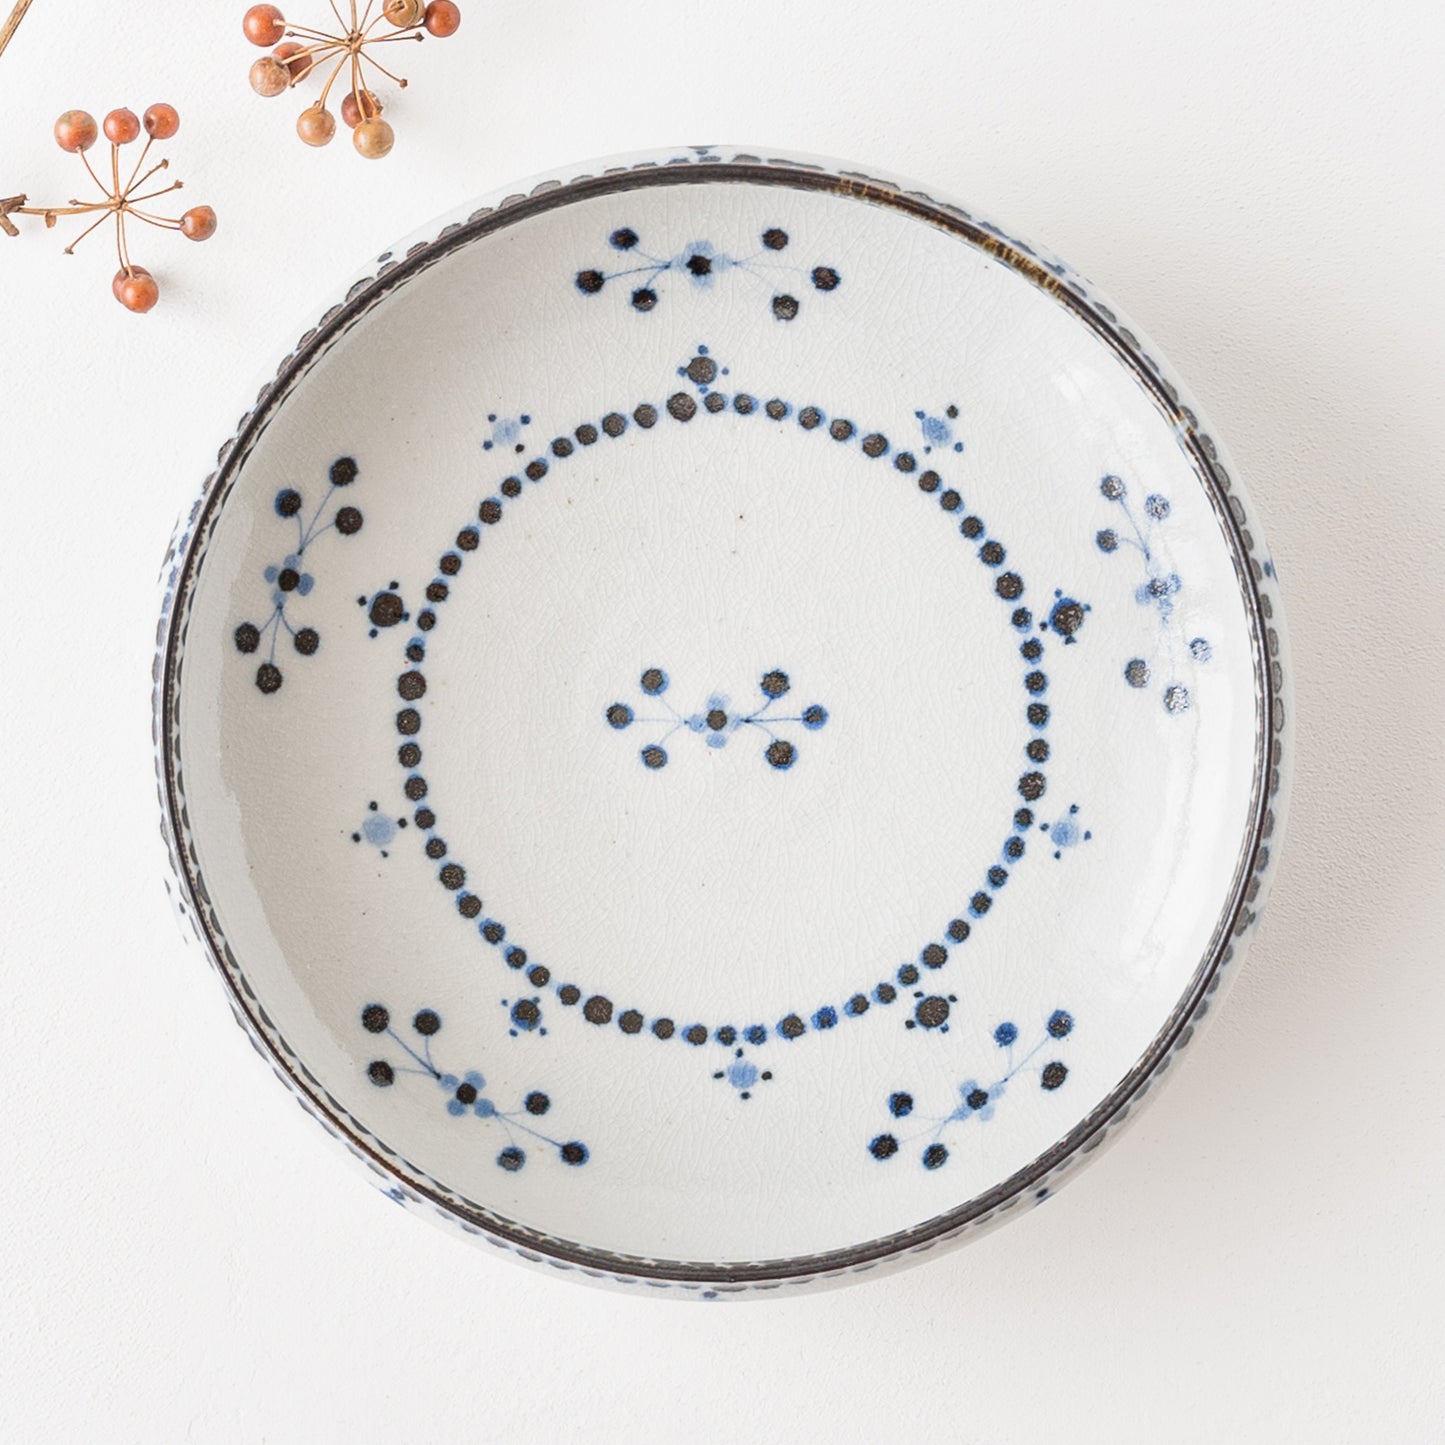 ふんわりやさしい青い小花文が素敵な陶彩窯の7寸深皿